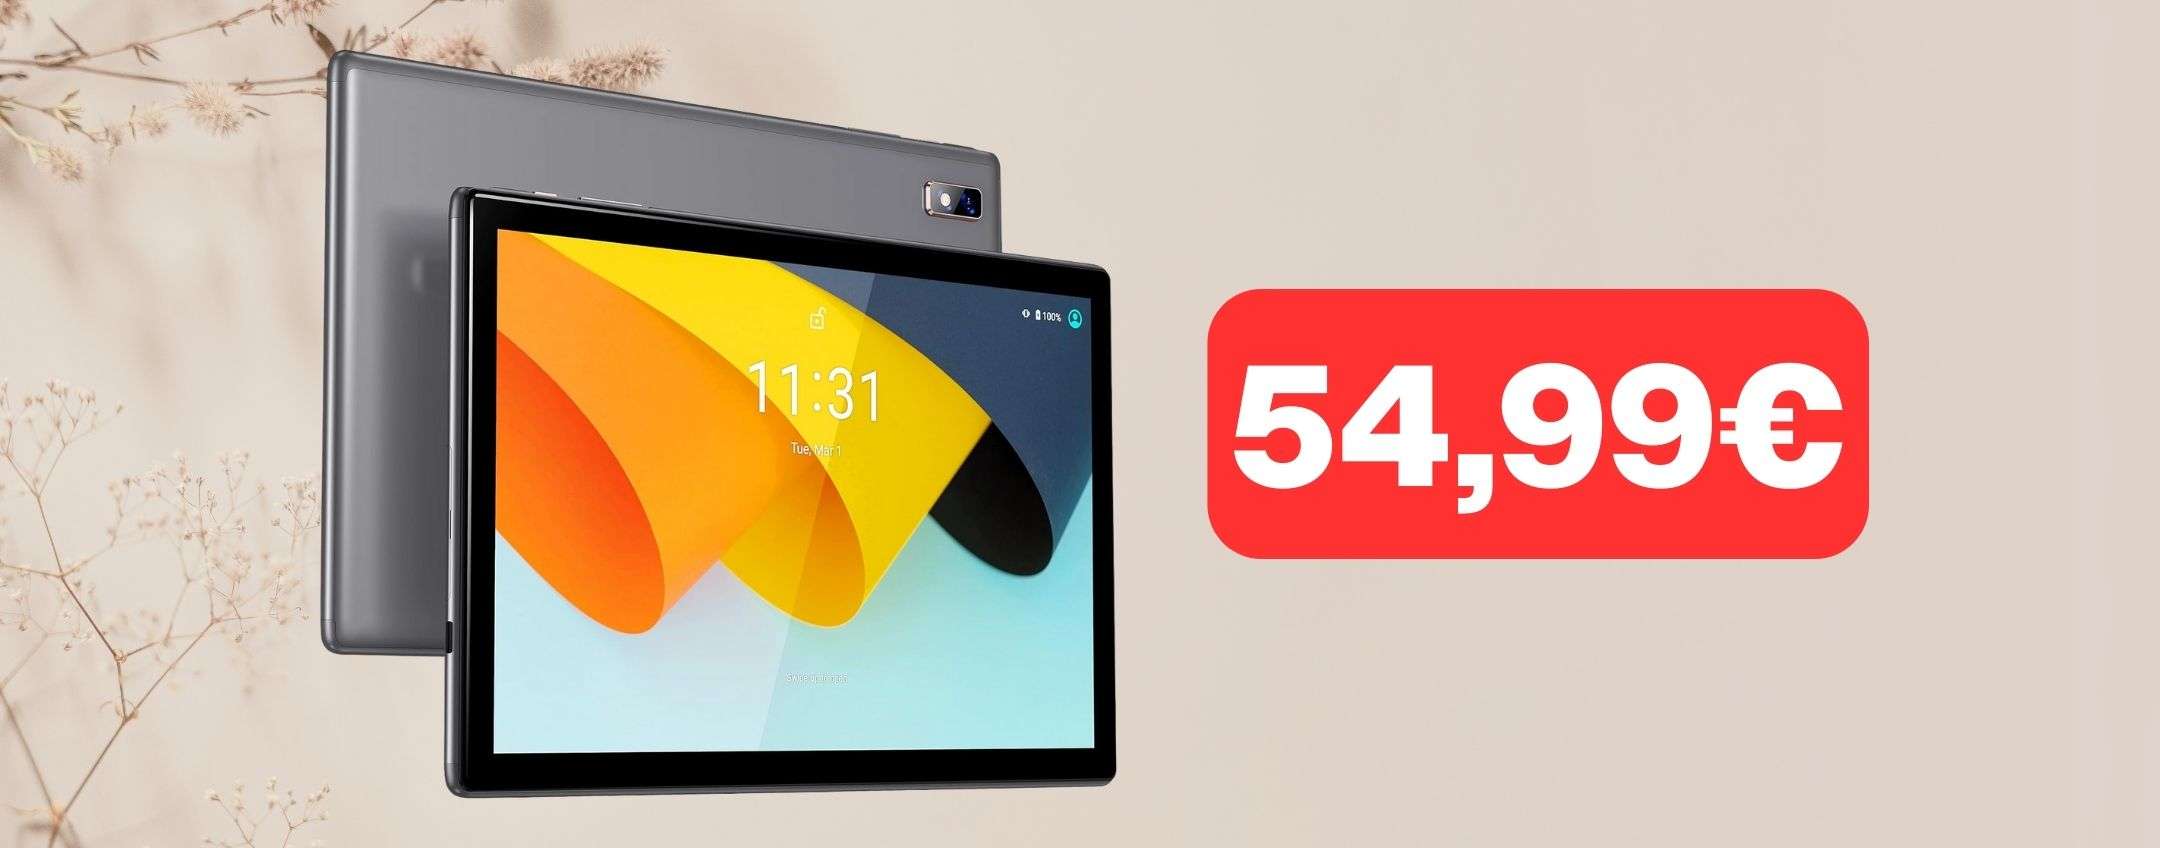 Tablet Android da 10.1 pollici a 54,99 euro: INCREDIBILE su